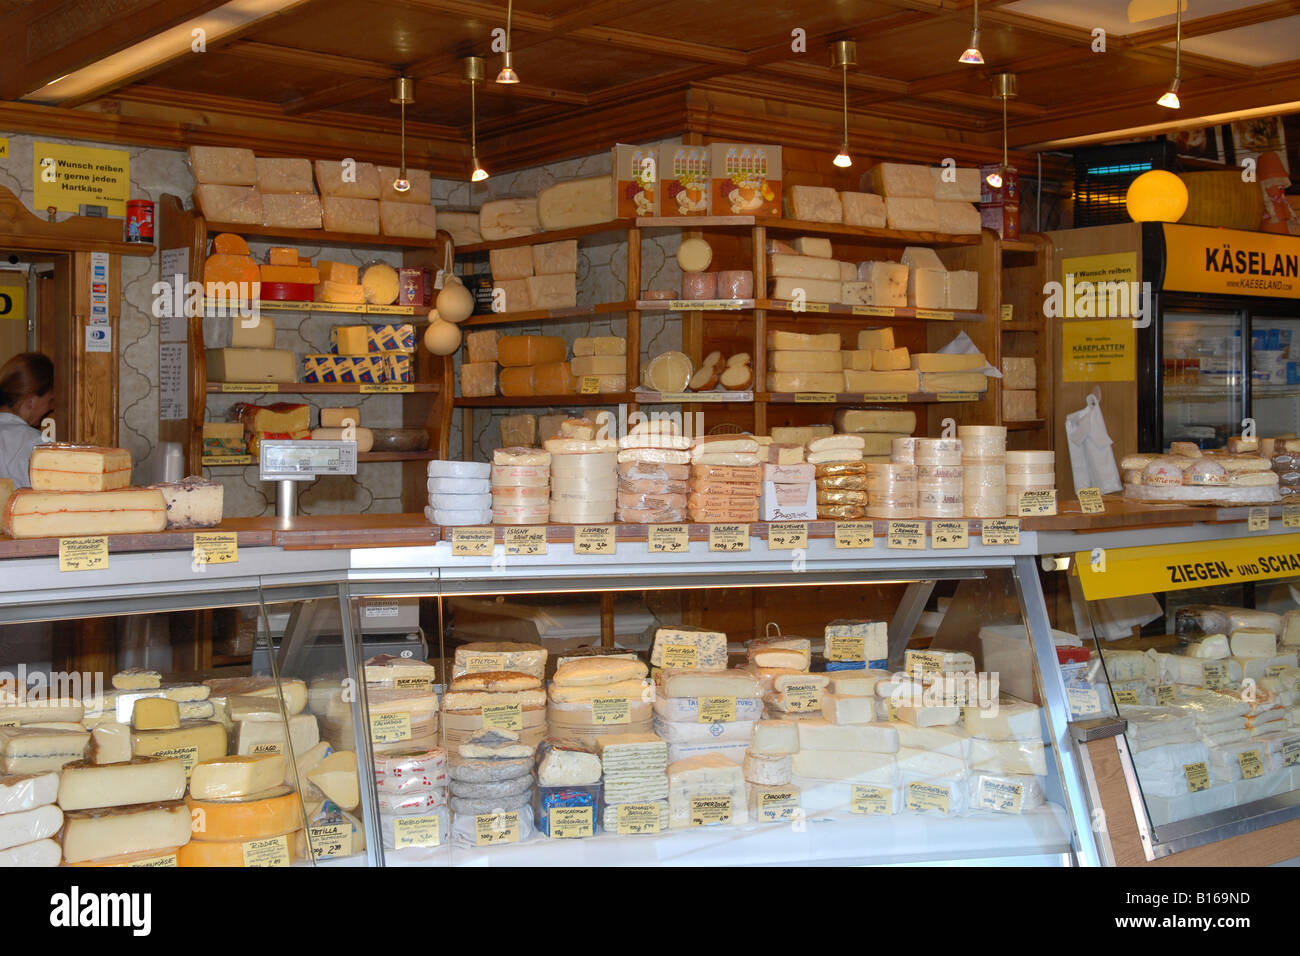 Wien le Naschmarkt de fromage frais avec reblochon camembert livarot , stilton , munster chaource , brie , dolce latte epoisse etc Banque D'Images